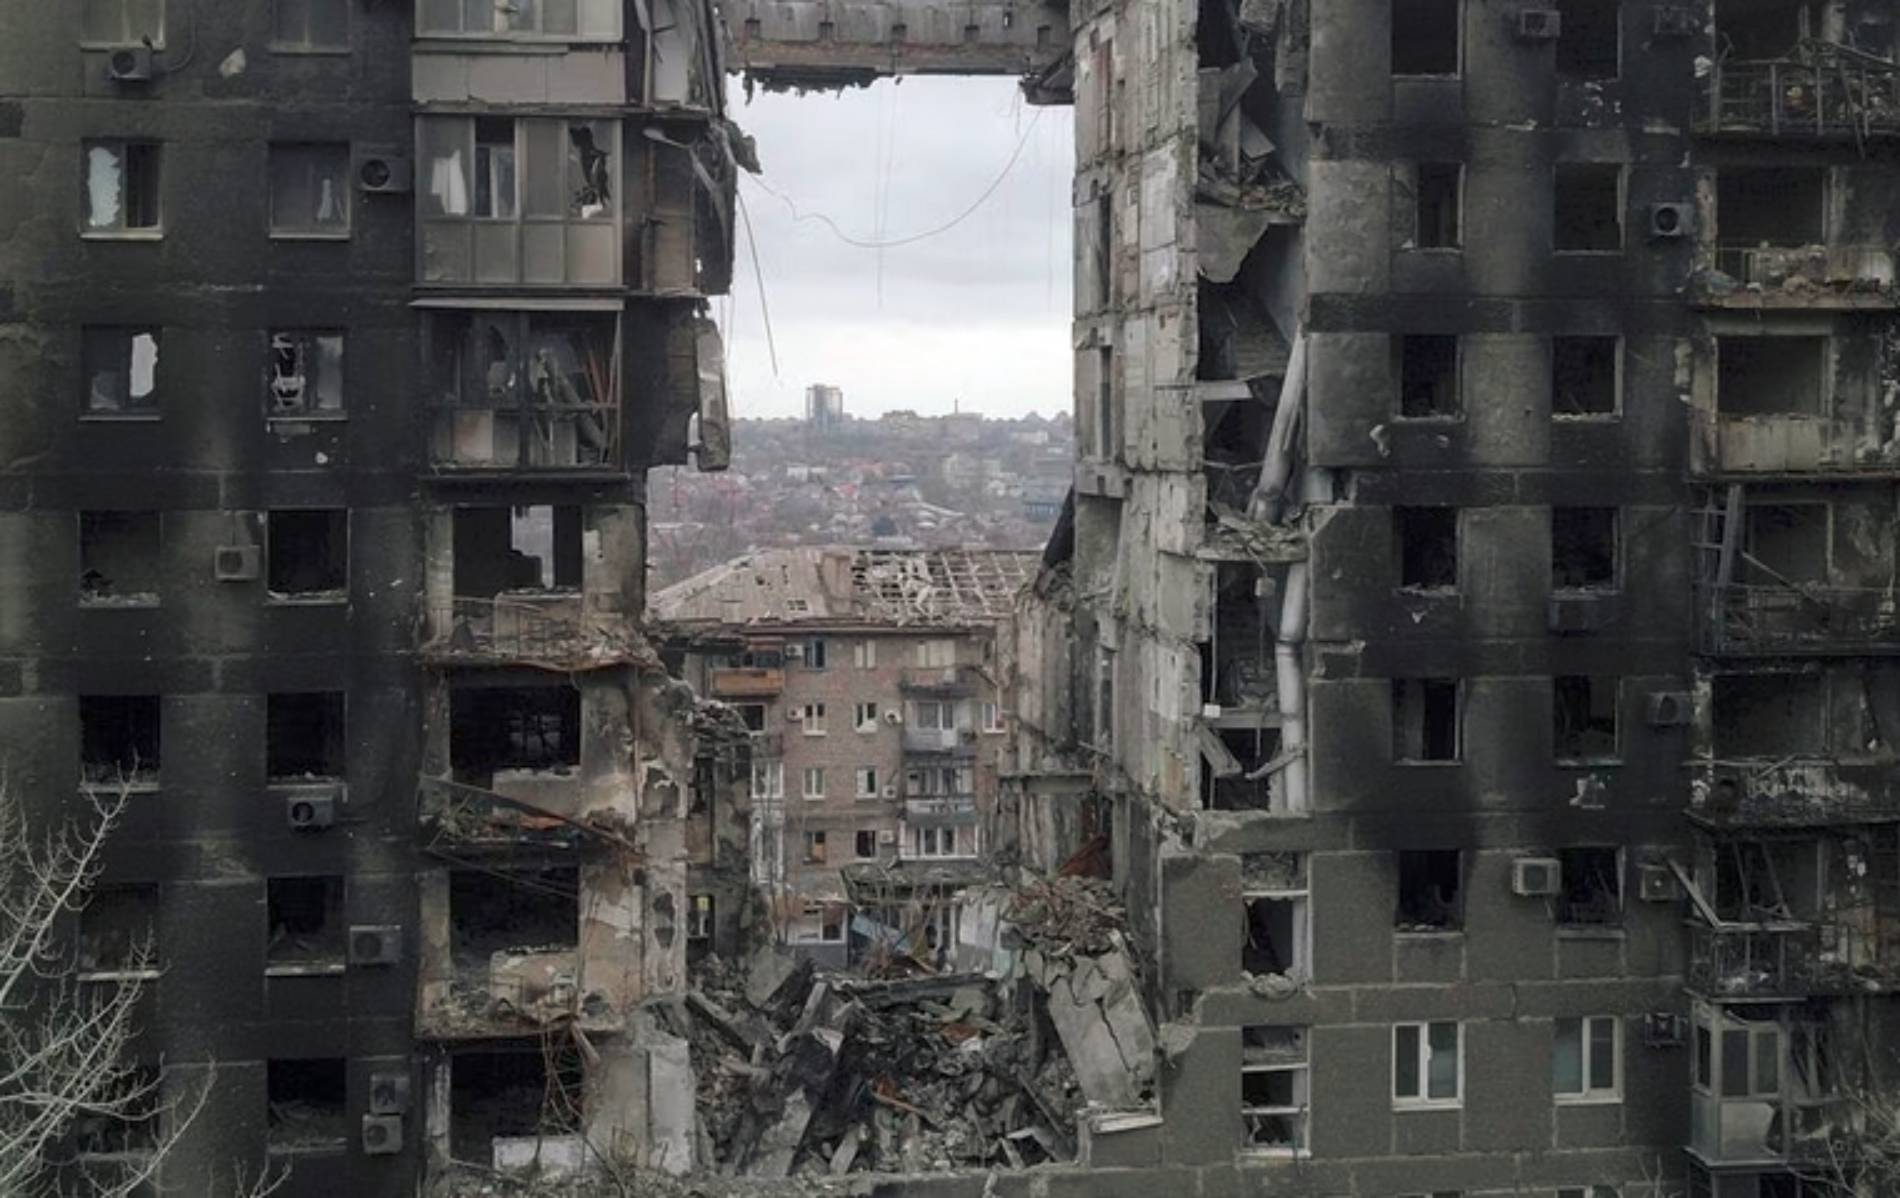 Πολυκατοικία που κατααστράφηκε κατά τη διάρκεια της σύγκρουσης Ουκρανίας-Ρωσίας στη Μαριούπολη, Ουκρανία 14 Απριλίου 2022. Φωτογραφία από drone (REUTERS/Pavel Klimov/)